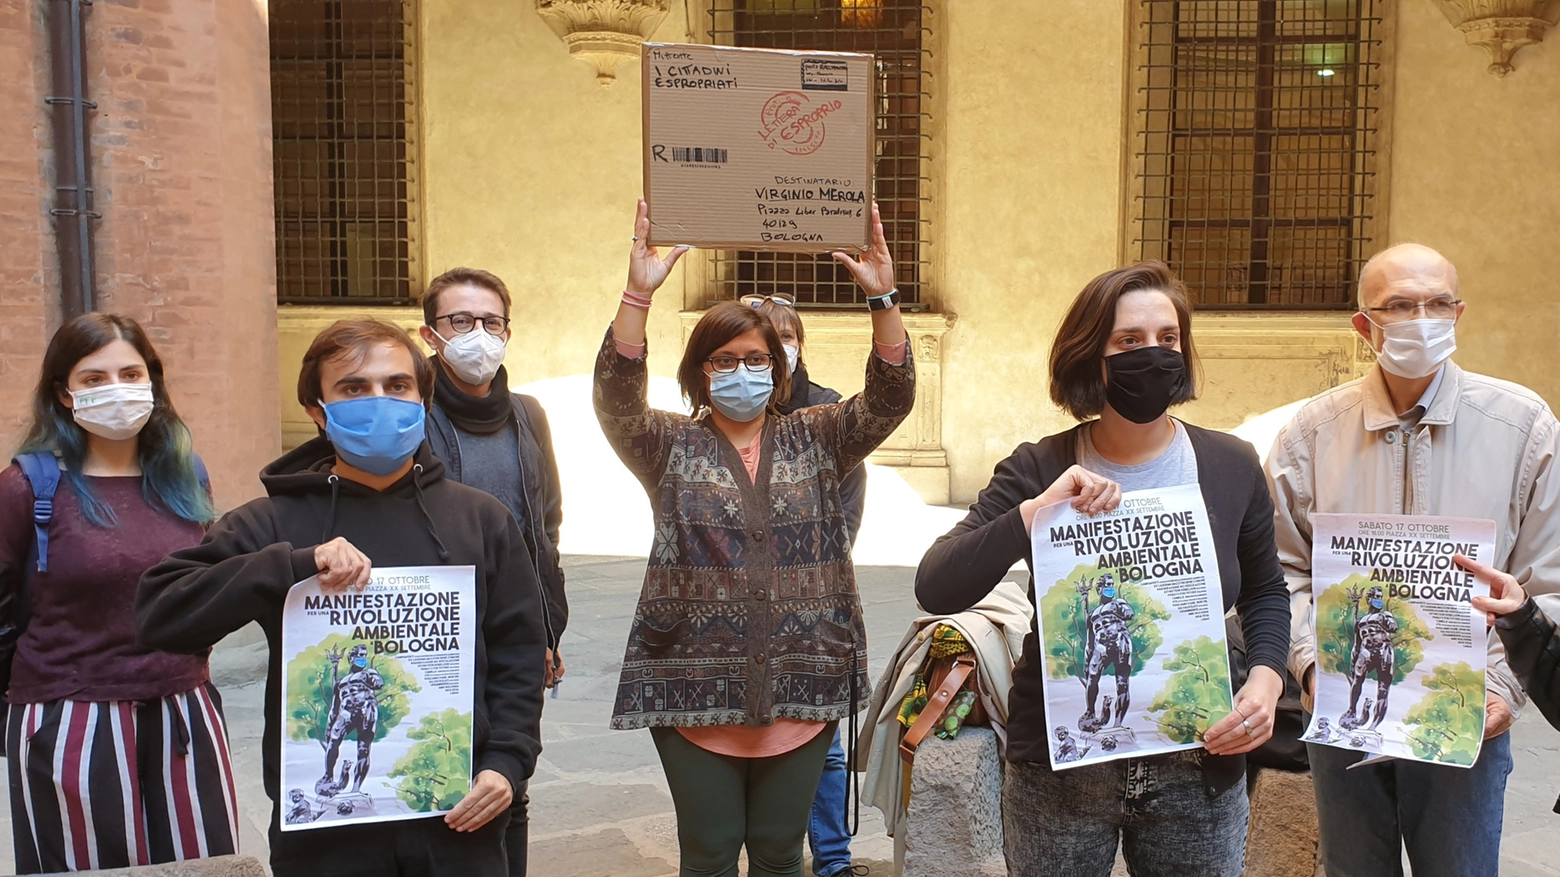 Labas-ambientalisti: "Eco svolta, No al Passante"